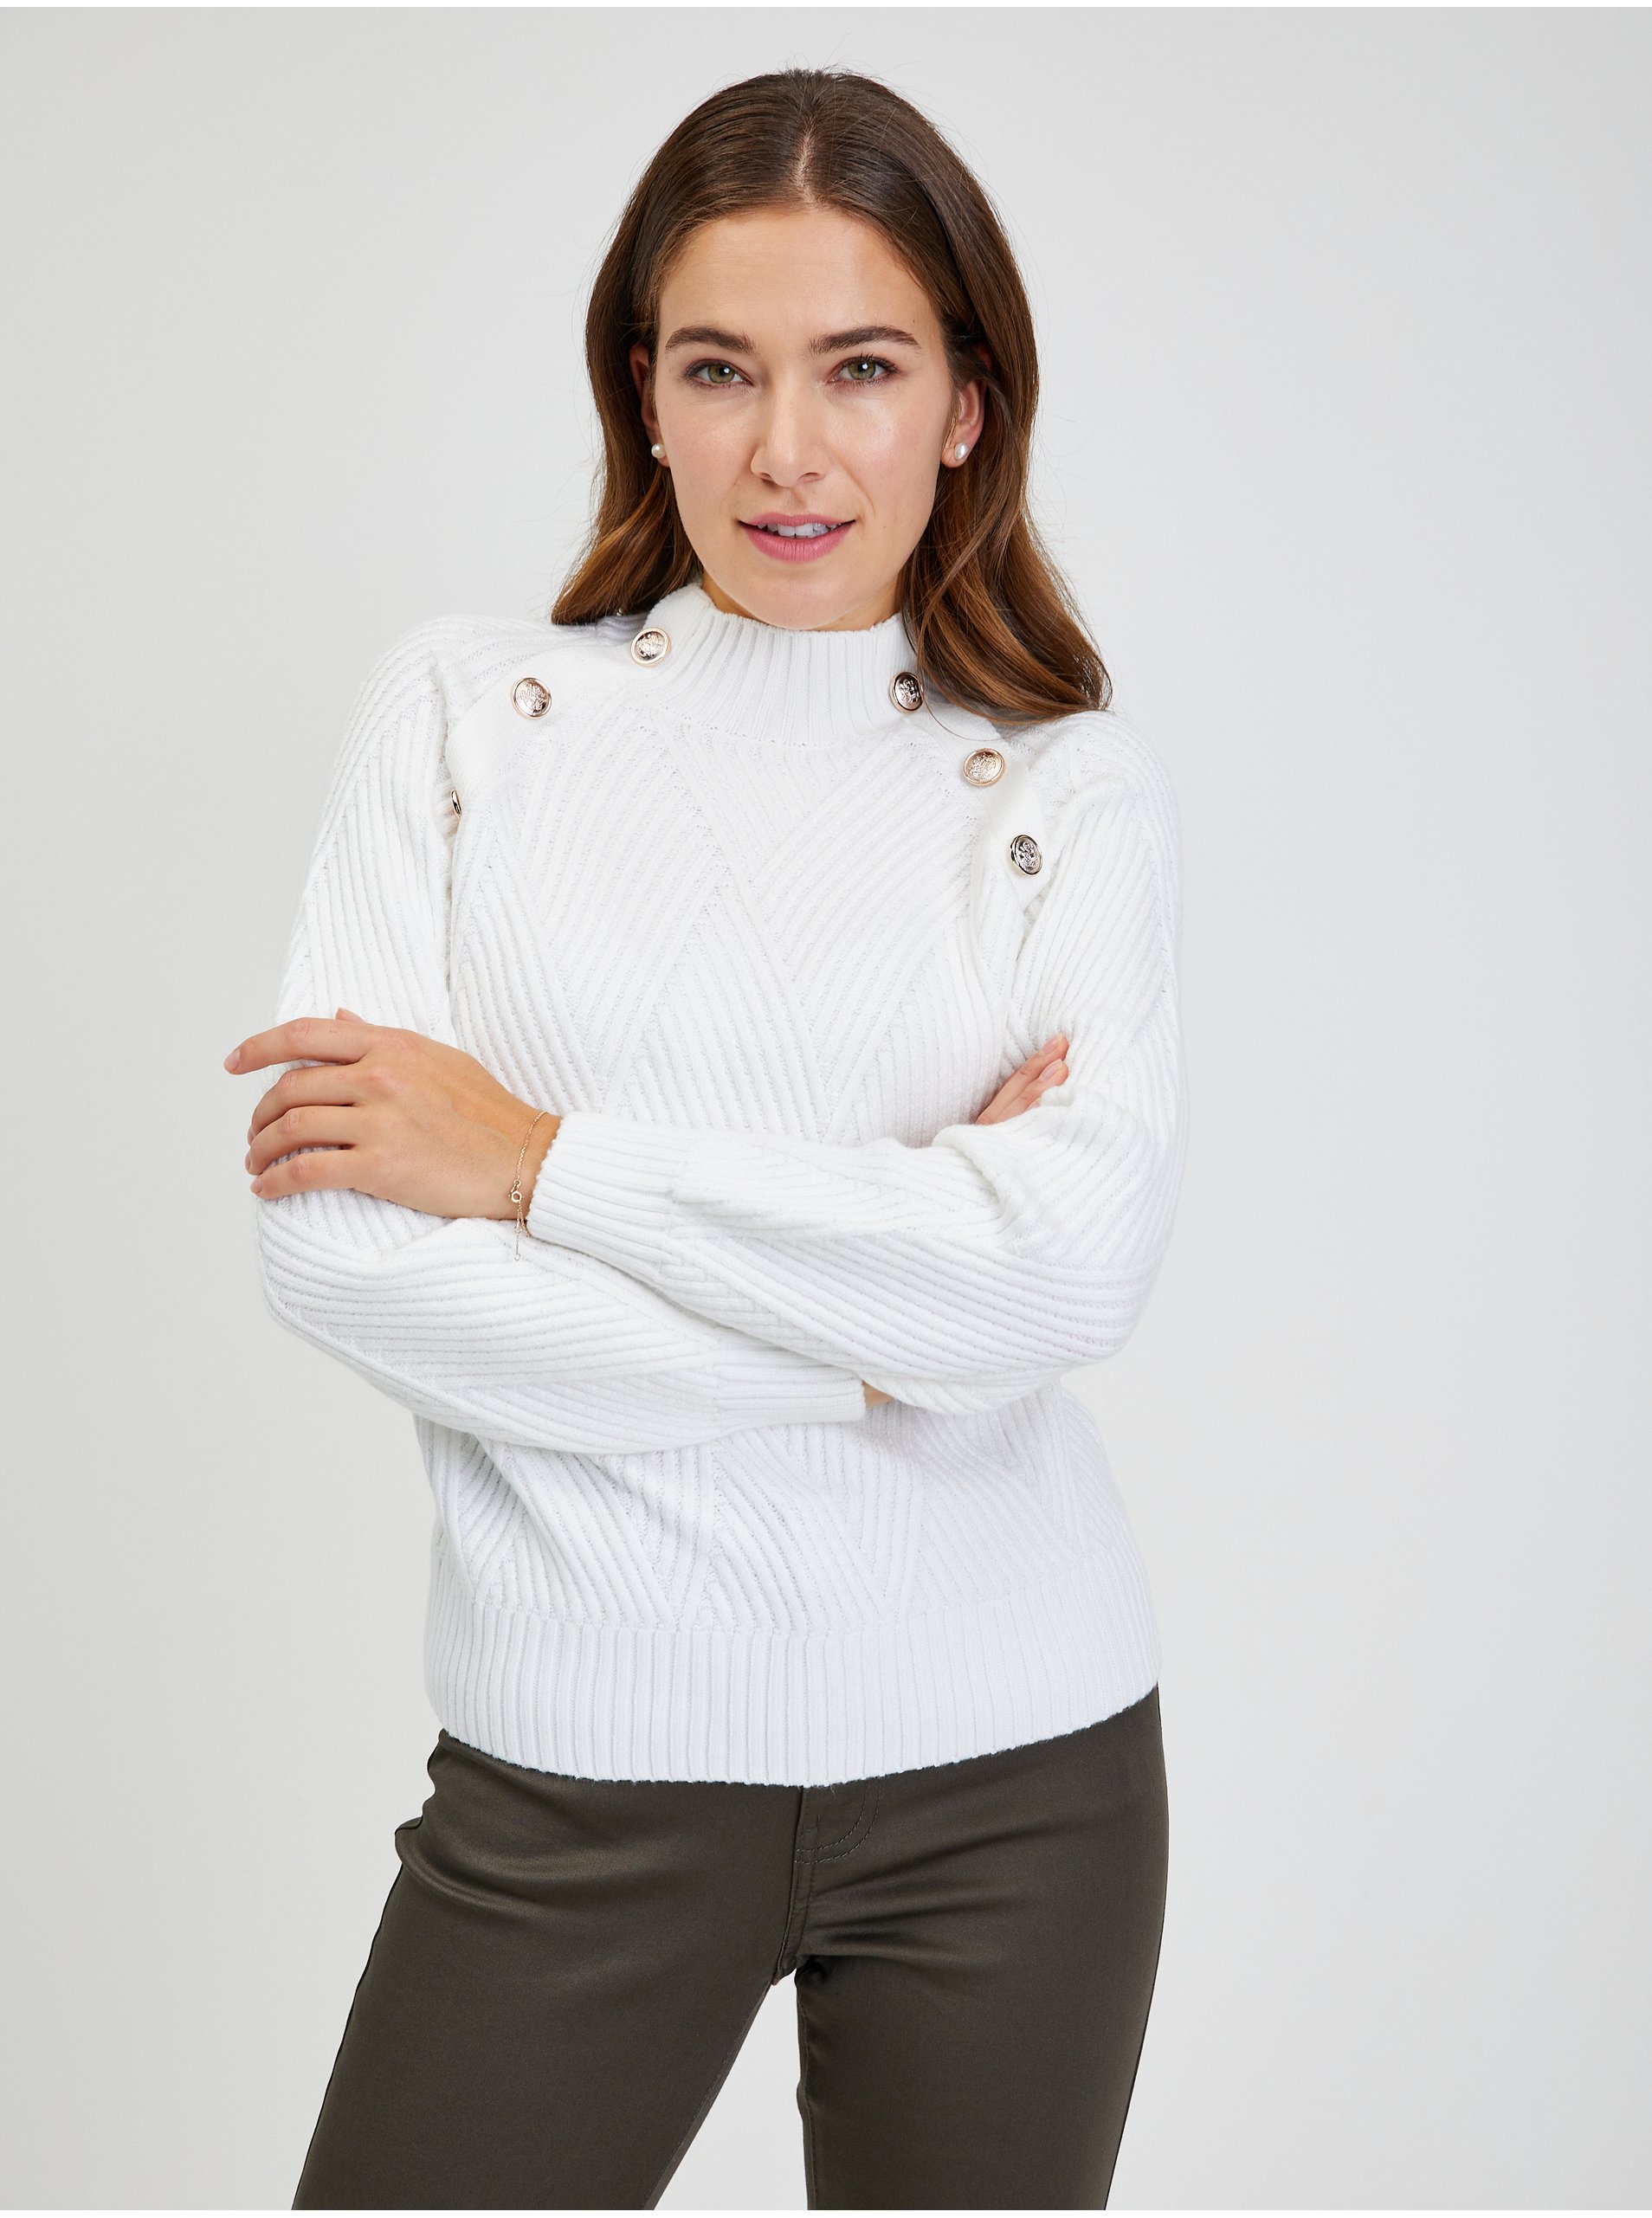 E-shop Bílý dámský žebrovaný svetr s ozdobnými knoflíky ORSAY